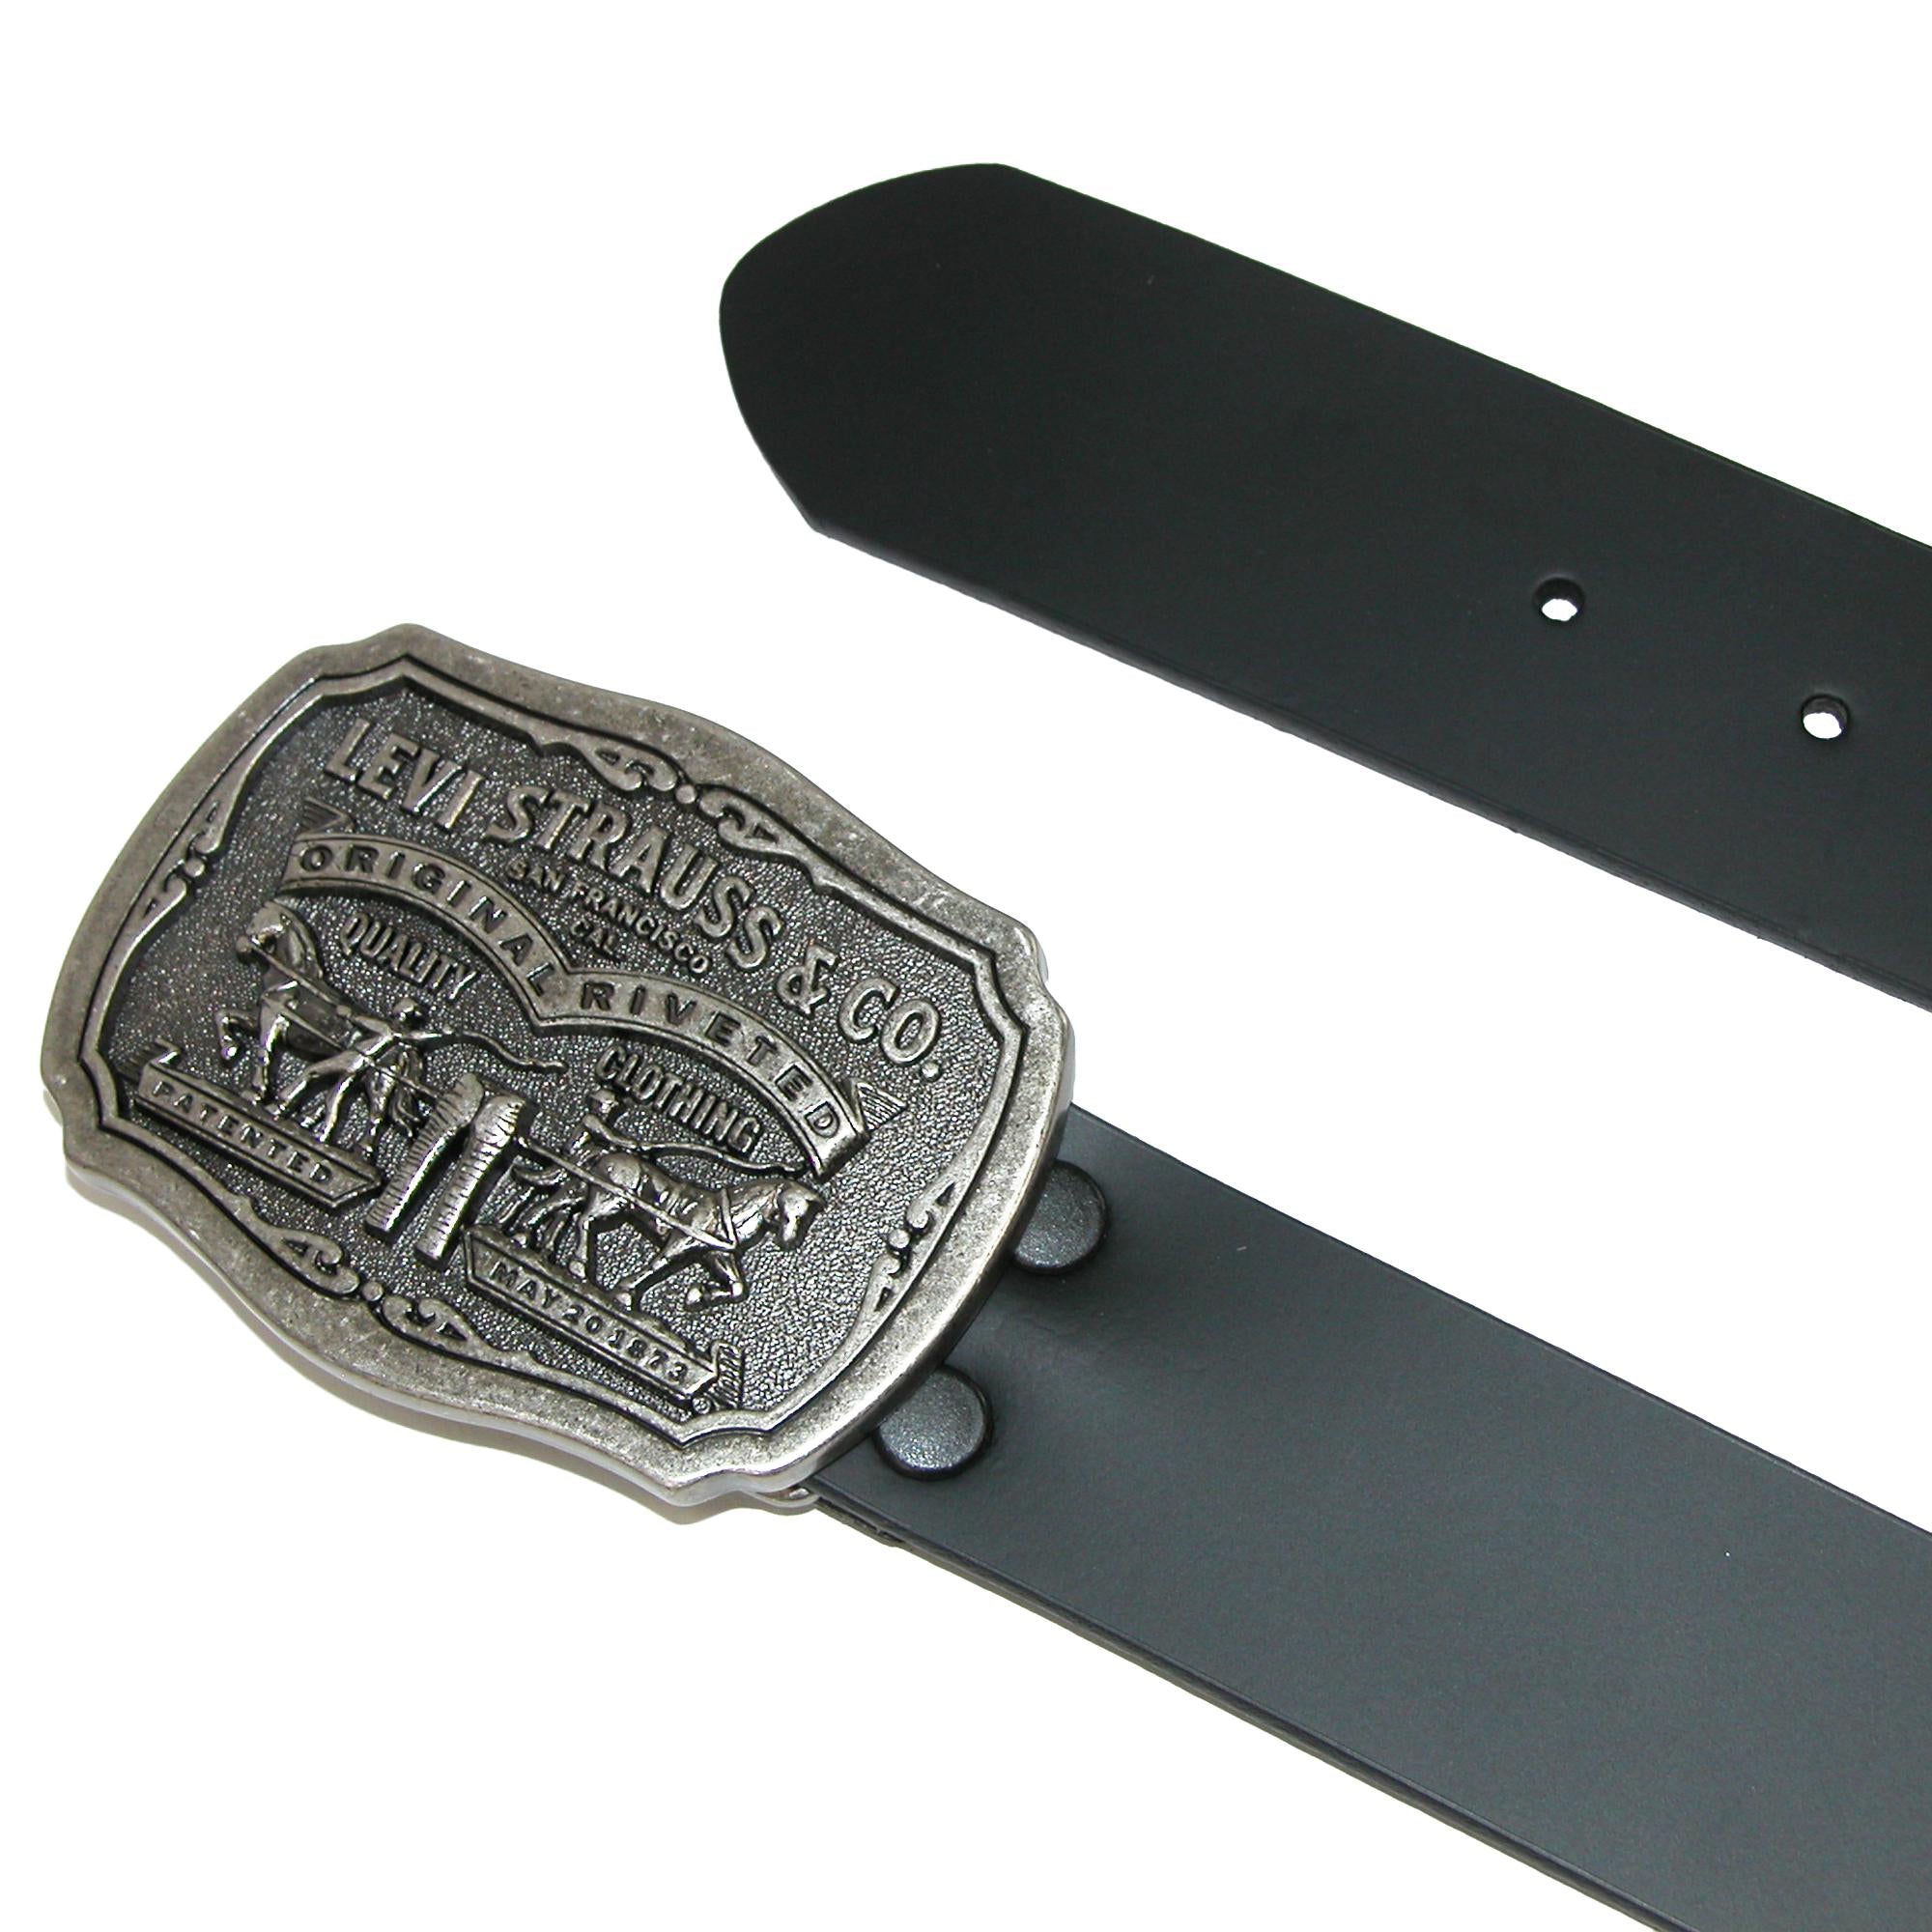 Levis Men's Leather Bridle Belt with Antiqued Removable Plaque Buckle